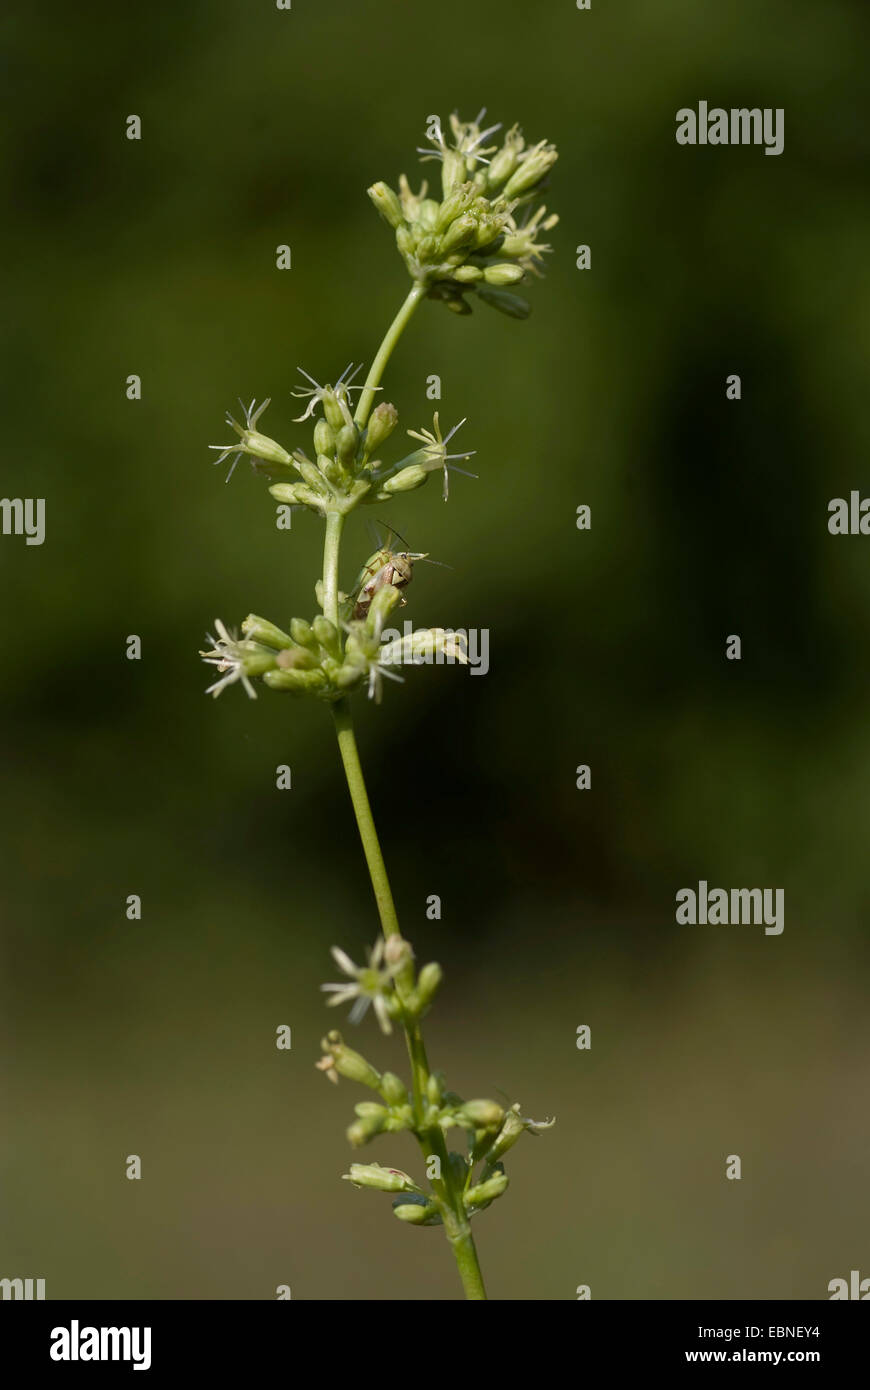 Spanish catchfly (Silene otites), inflorescence, Germany Stock Photo